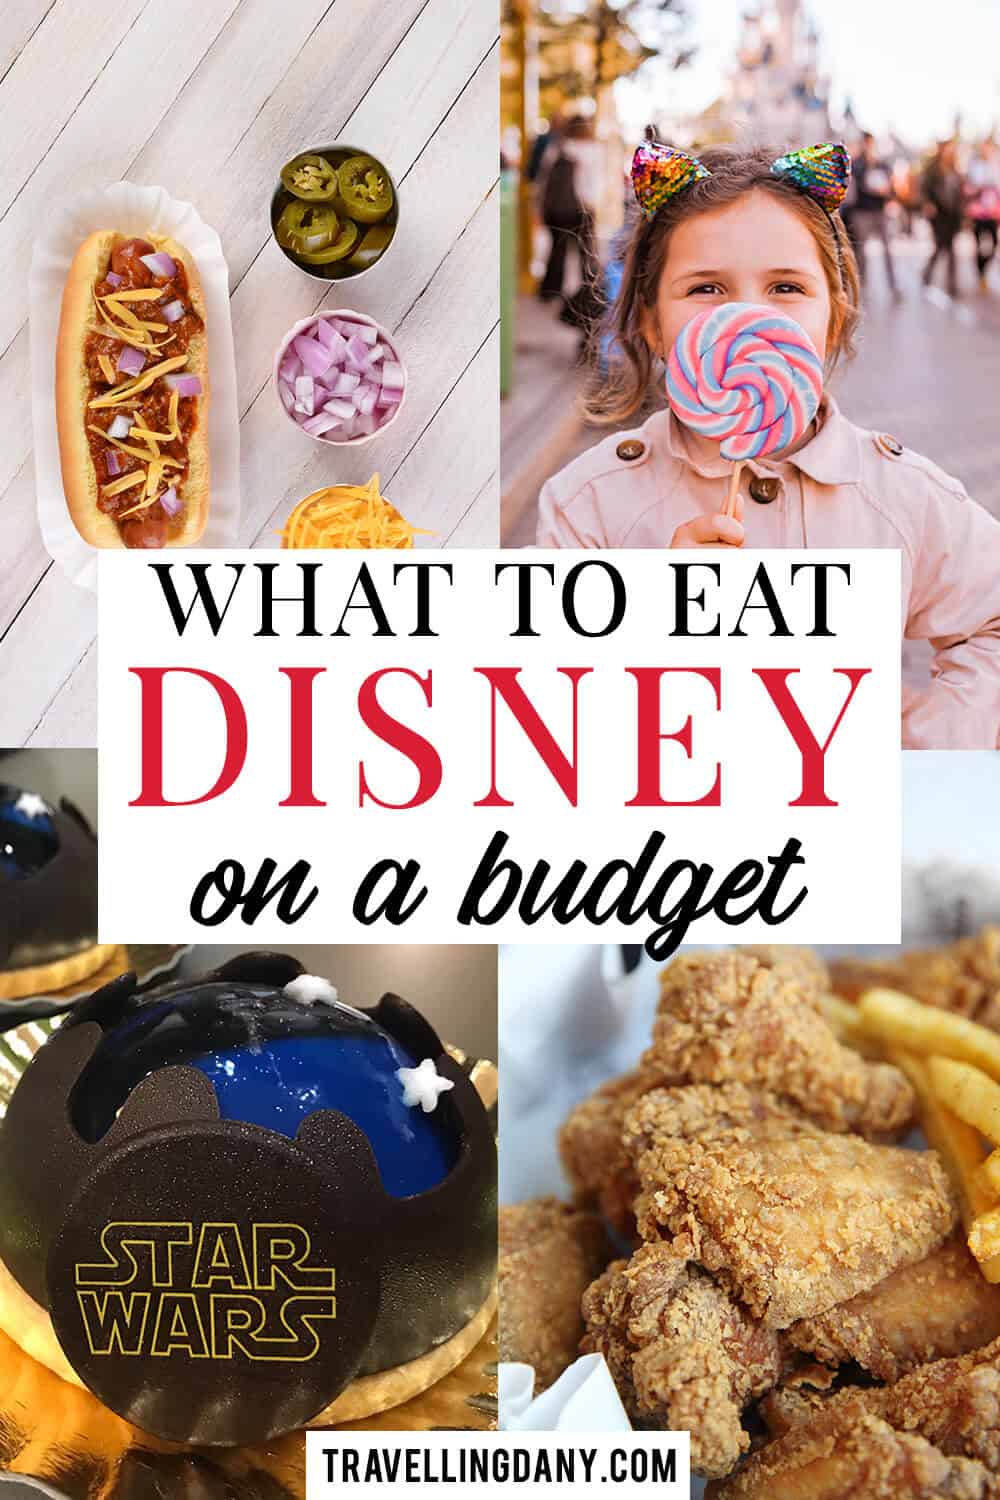 I cibi di Disney World sono notoriamente molto costosi. Tuttavia organizzare il viaggio con anticipo vi aiuterà a non spendere troppo. Scopriamo insieme come risparmiare!